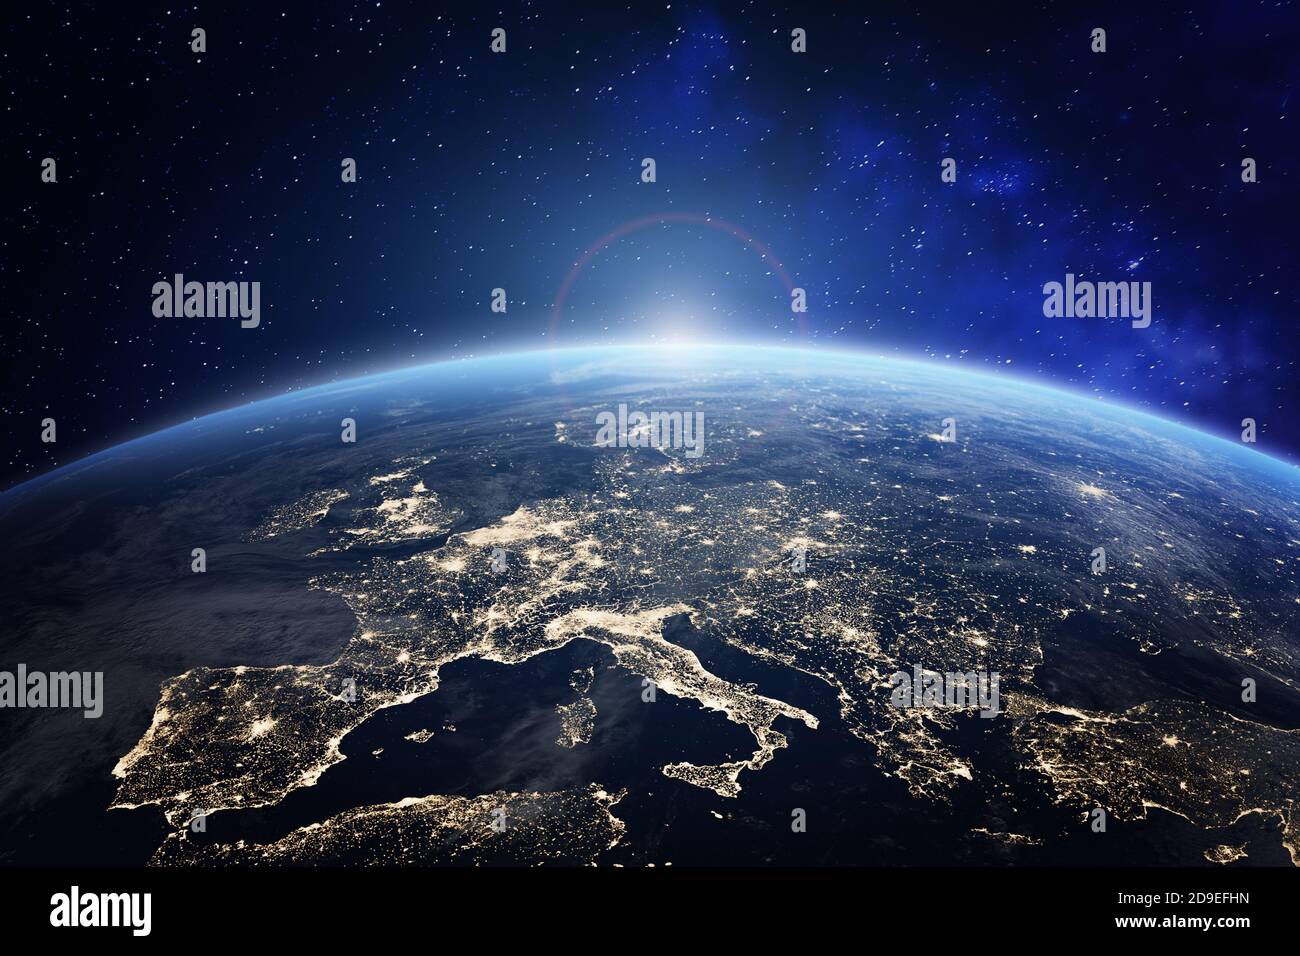 Planète Terre vue de l'espace avec les lumières de la ville en Europe. Monde avec lever du soleil. Image conceptuelle pour l'entreprise mondiale ou technique de communication européenne Banque D'Images